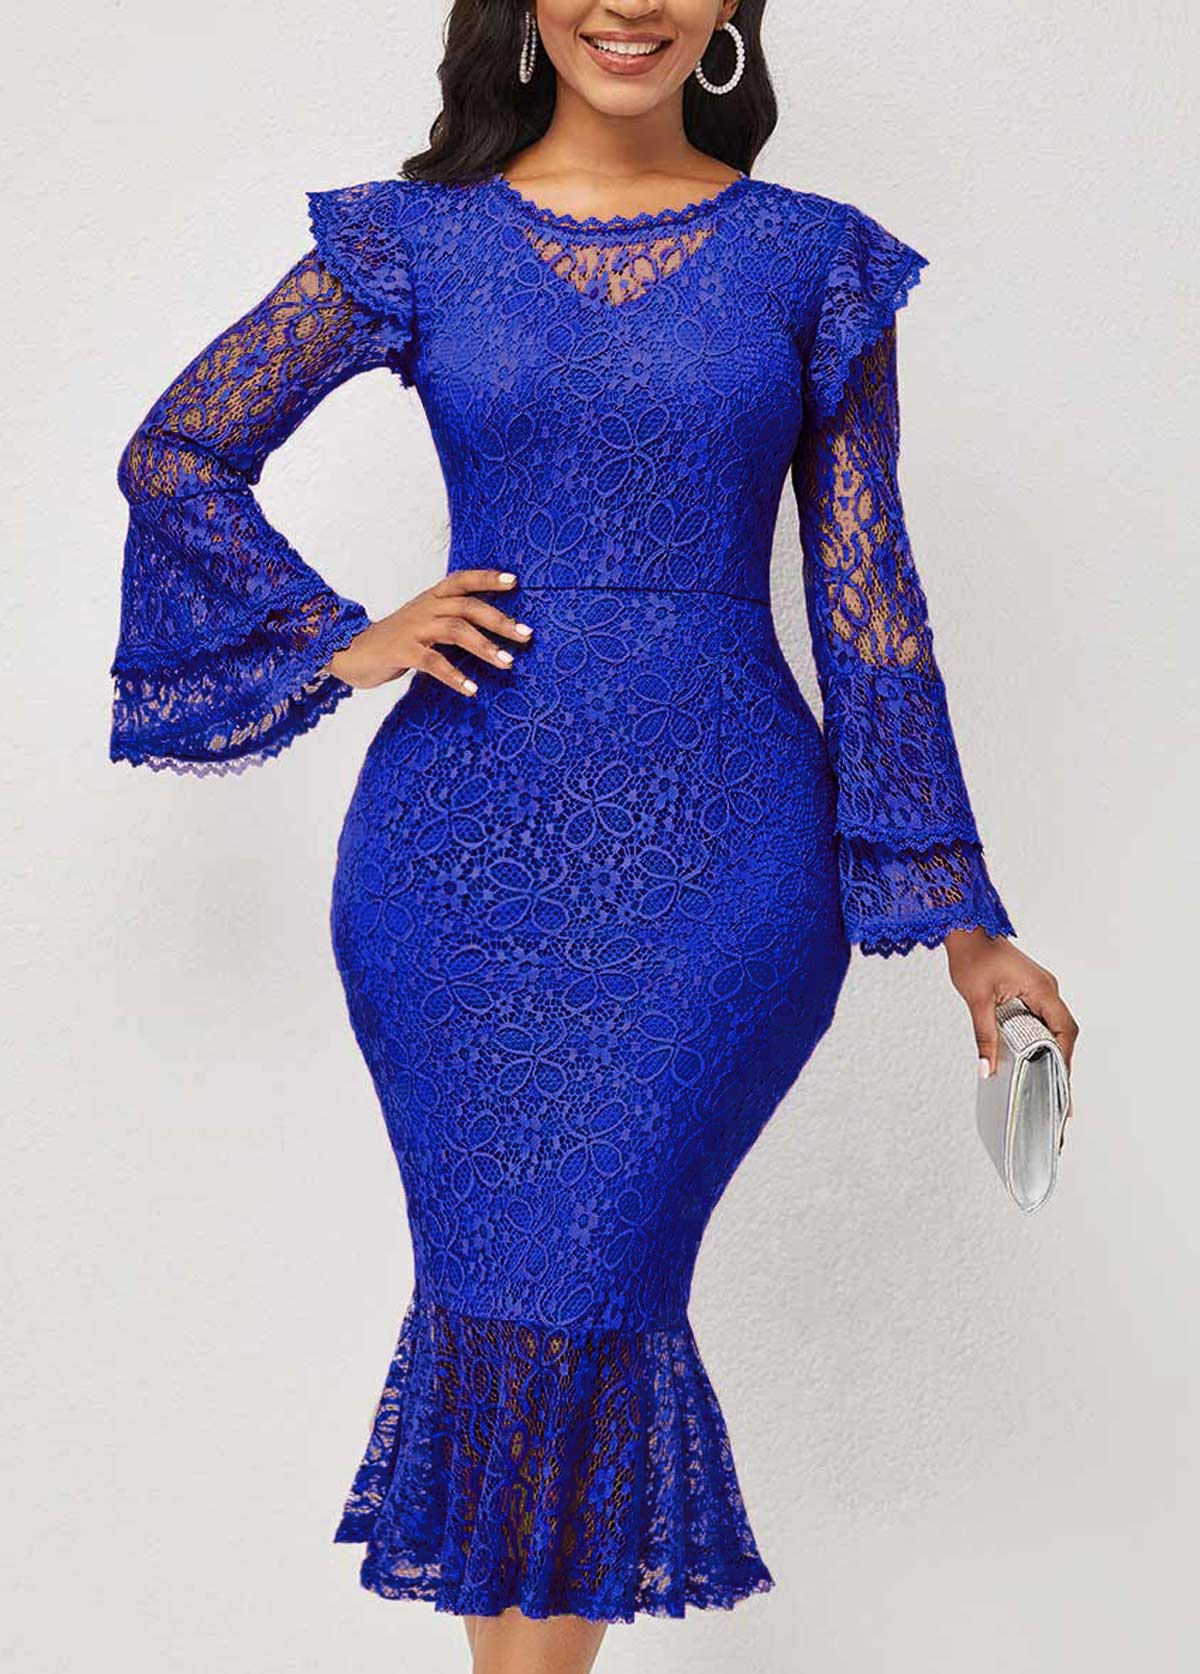 ROTITA Layered Bell Sleeve Blue Lace Stitching Mermaid Dress